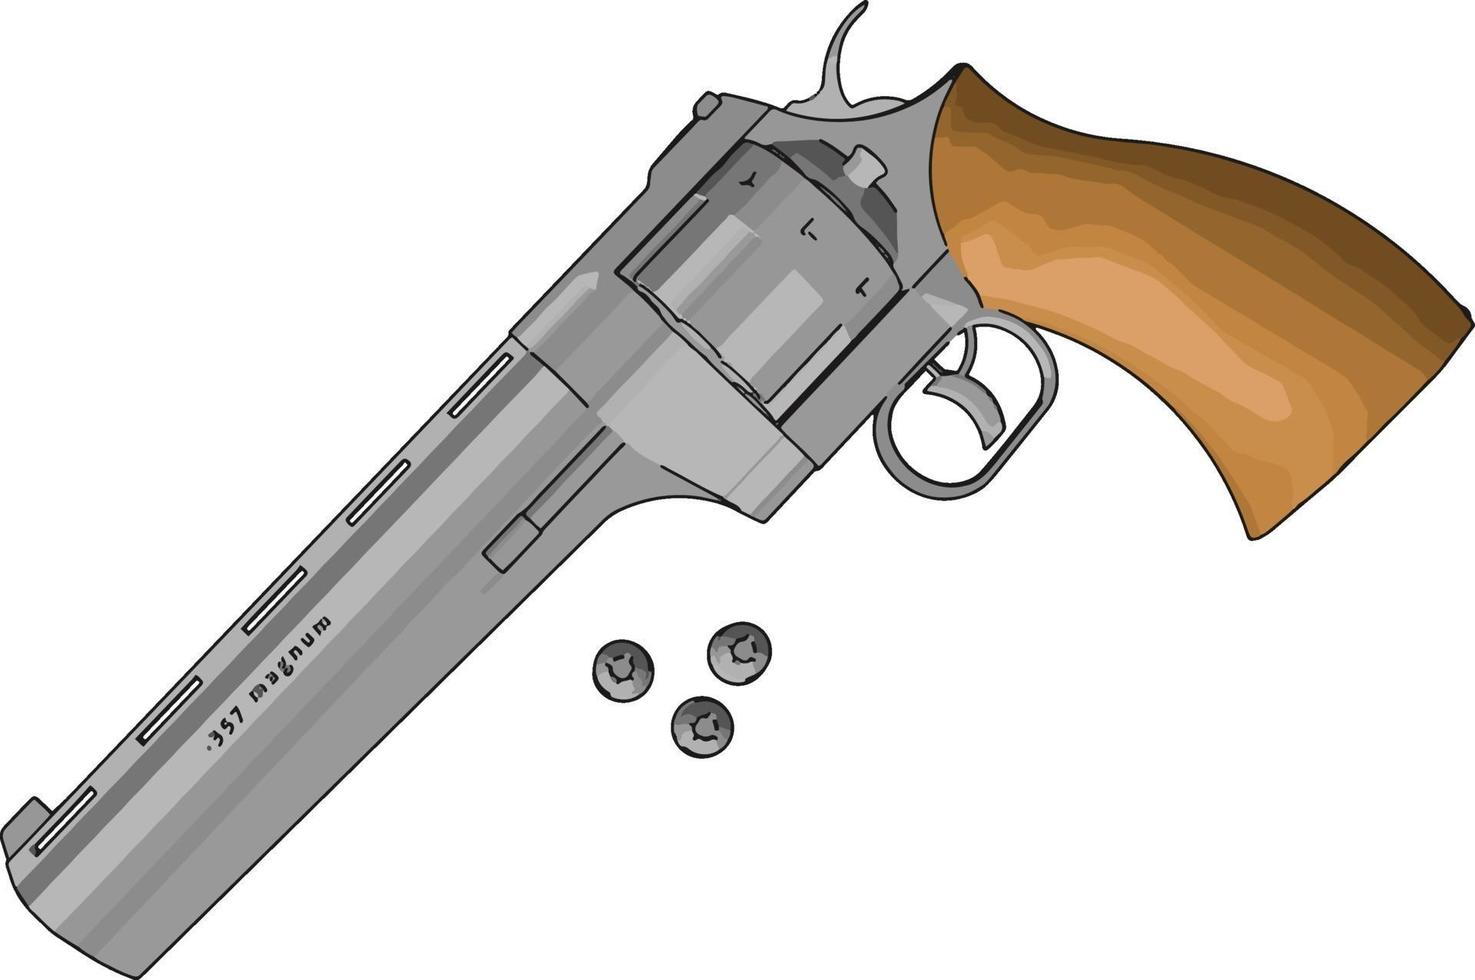 Pistola de revólver, ilustración, vector sobre fondo blanco.